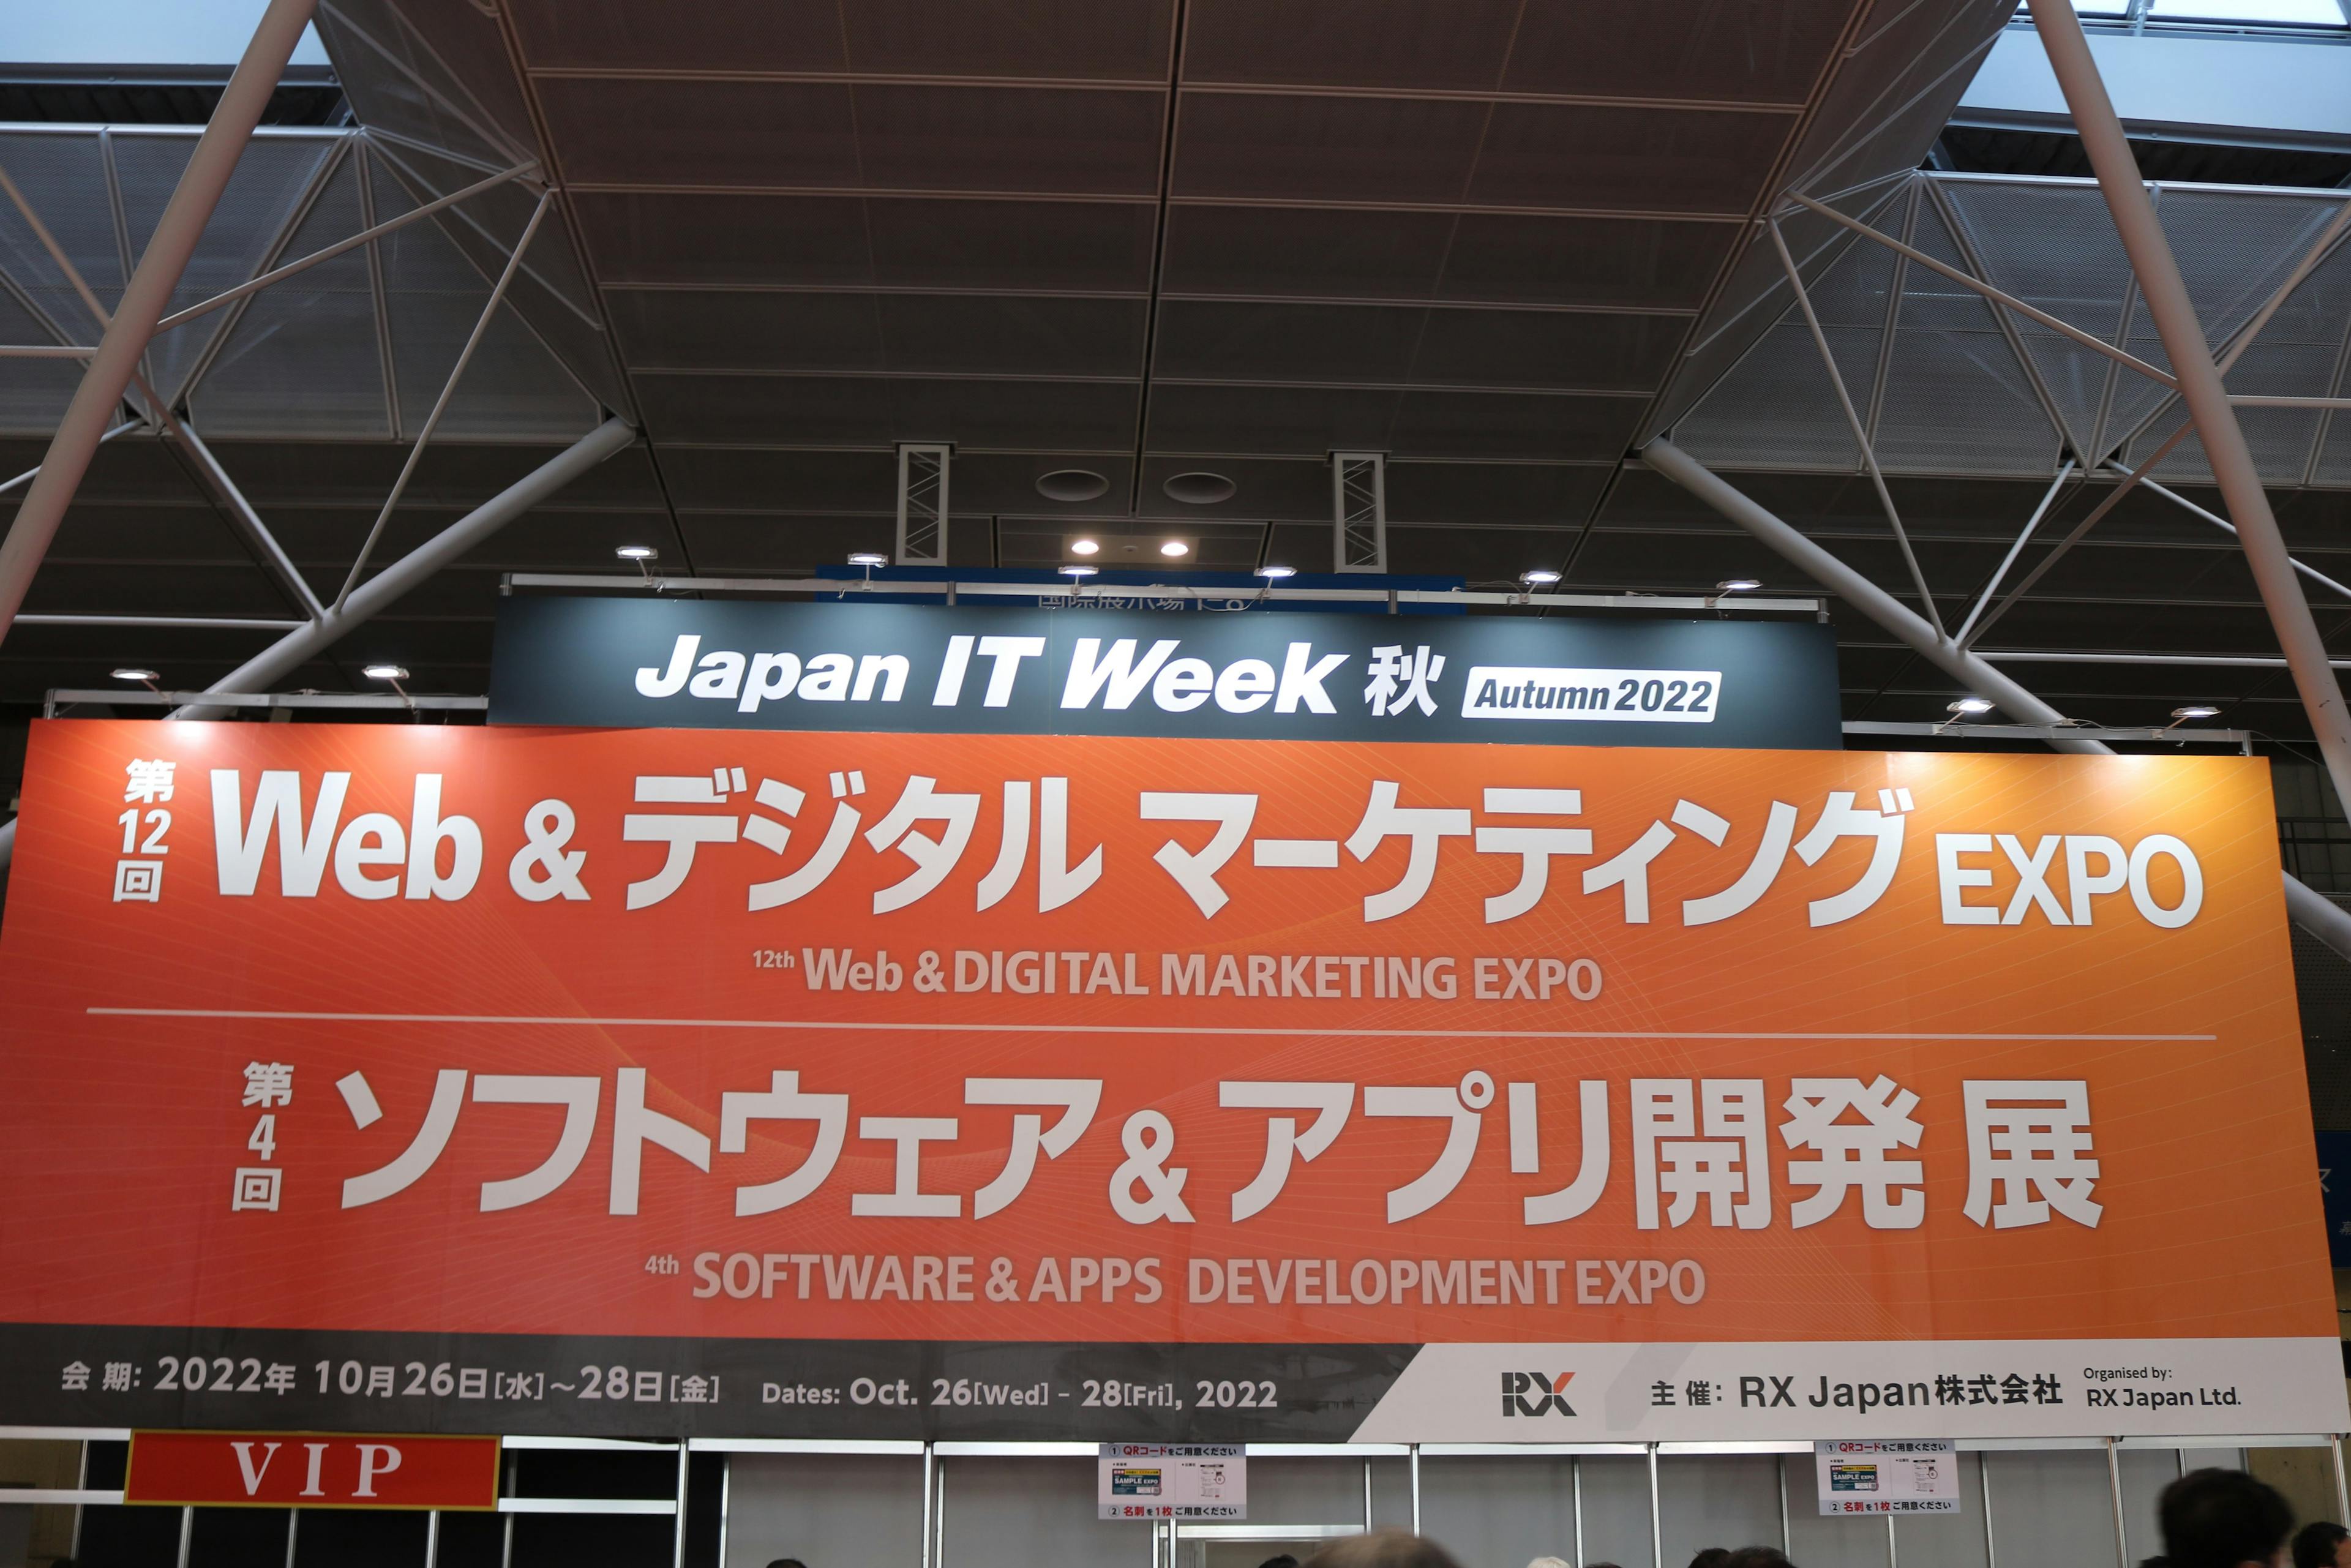 第13回 Japan IT Week【秋】／Web & デジタル マーケティング EXPO【秋】ご来場ありがとうございました。